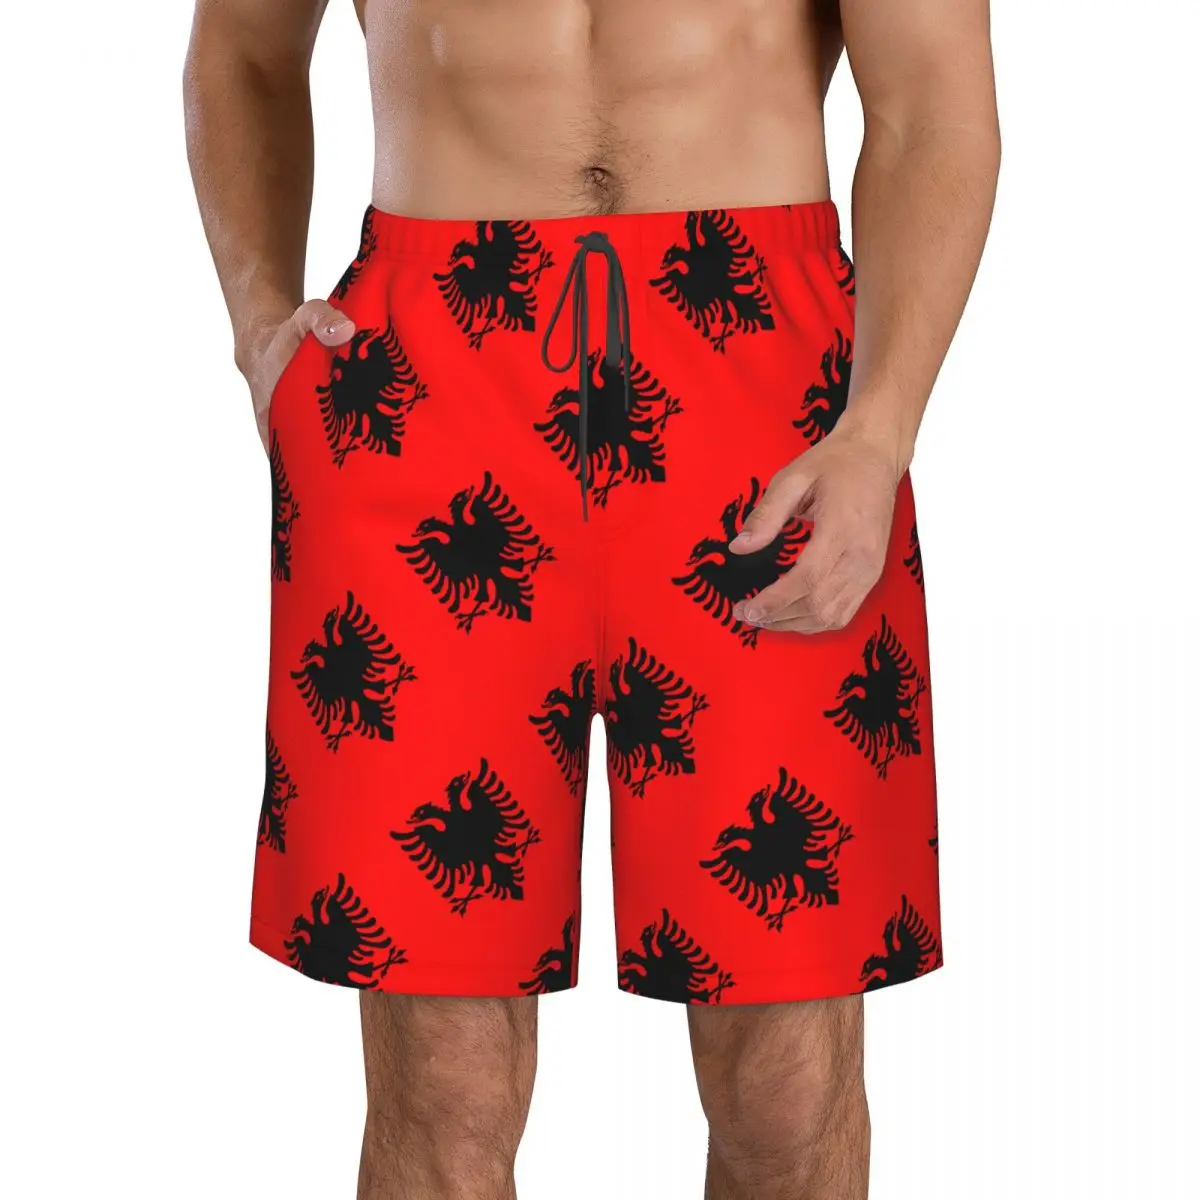 

Мужские плавки с флагом Албании, одежда для плавания, быстросохнущие пляжные шорты, купальный костюм для лета, подарок, 2 шт.